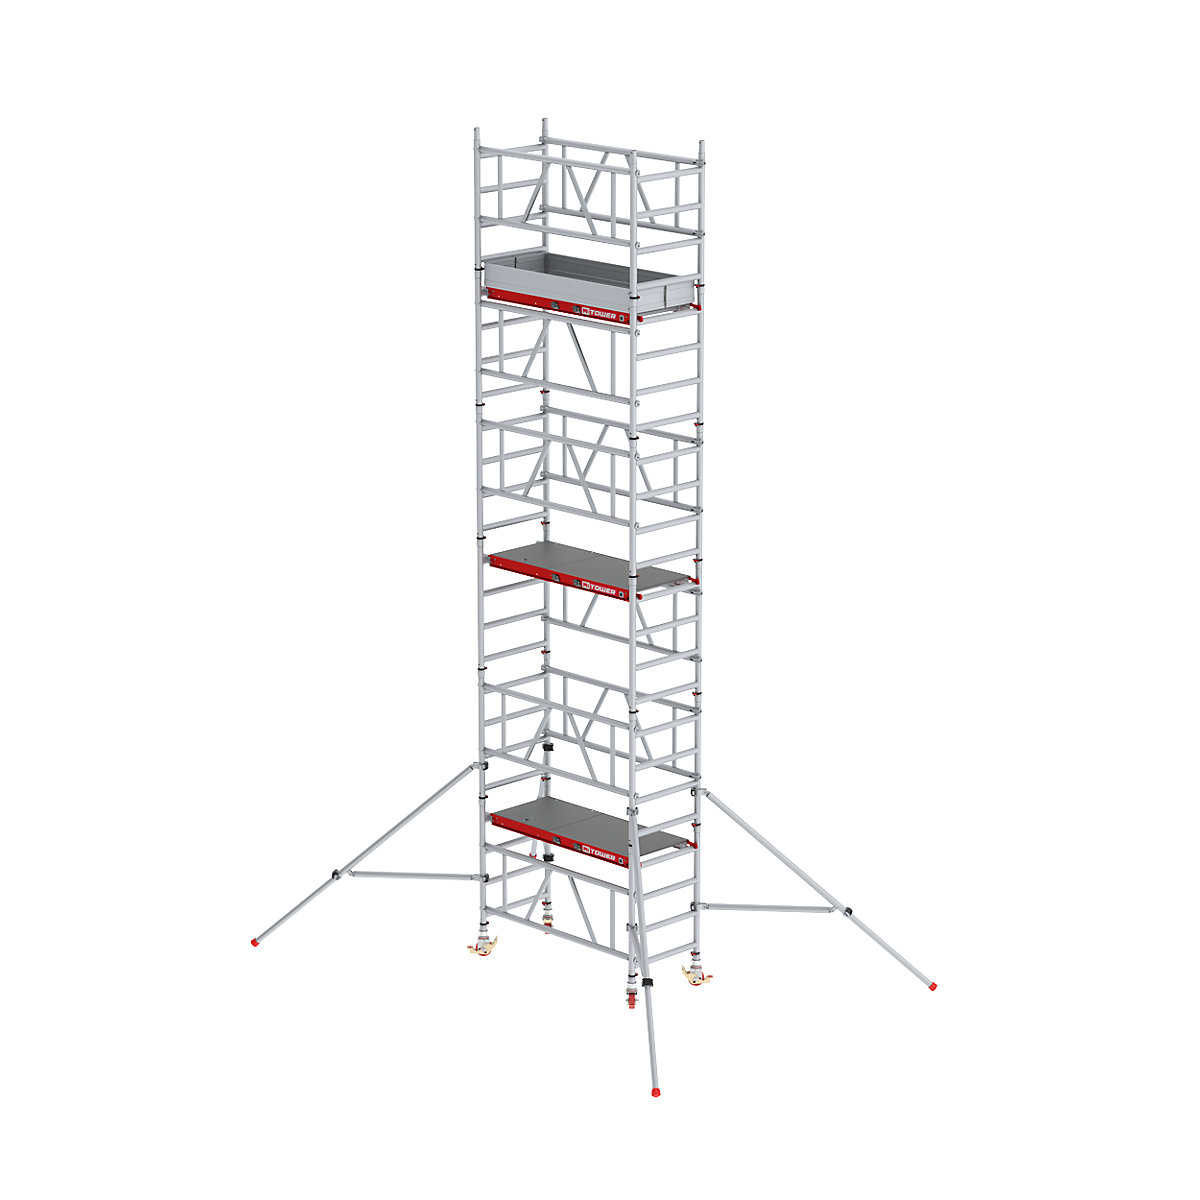 Hitro sestavljiv pomični oder MiTOWER Plus – Altrex, ploščad Fiber-Deck®, delovna višina 7 m